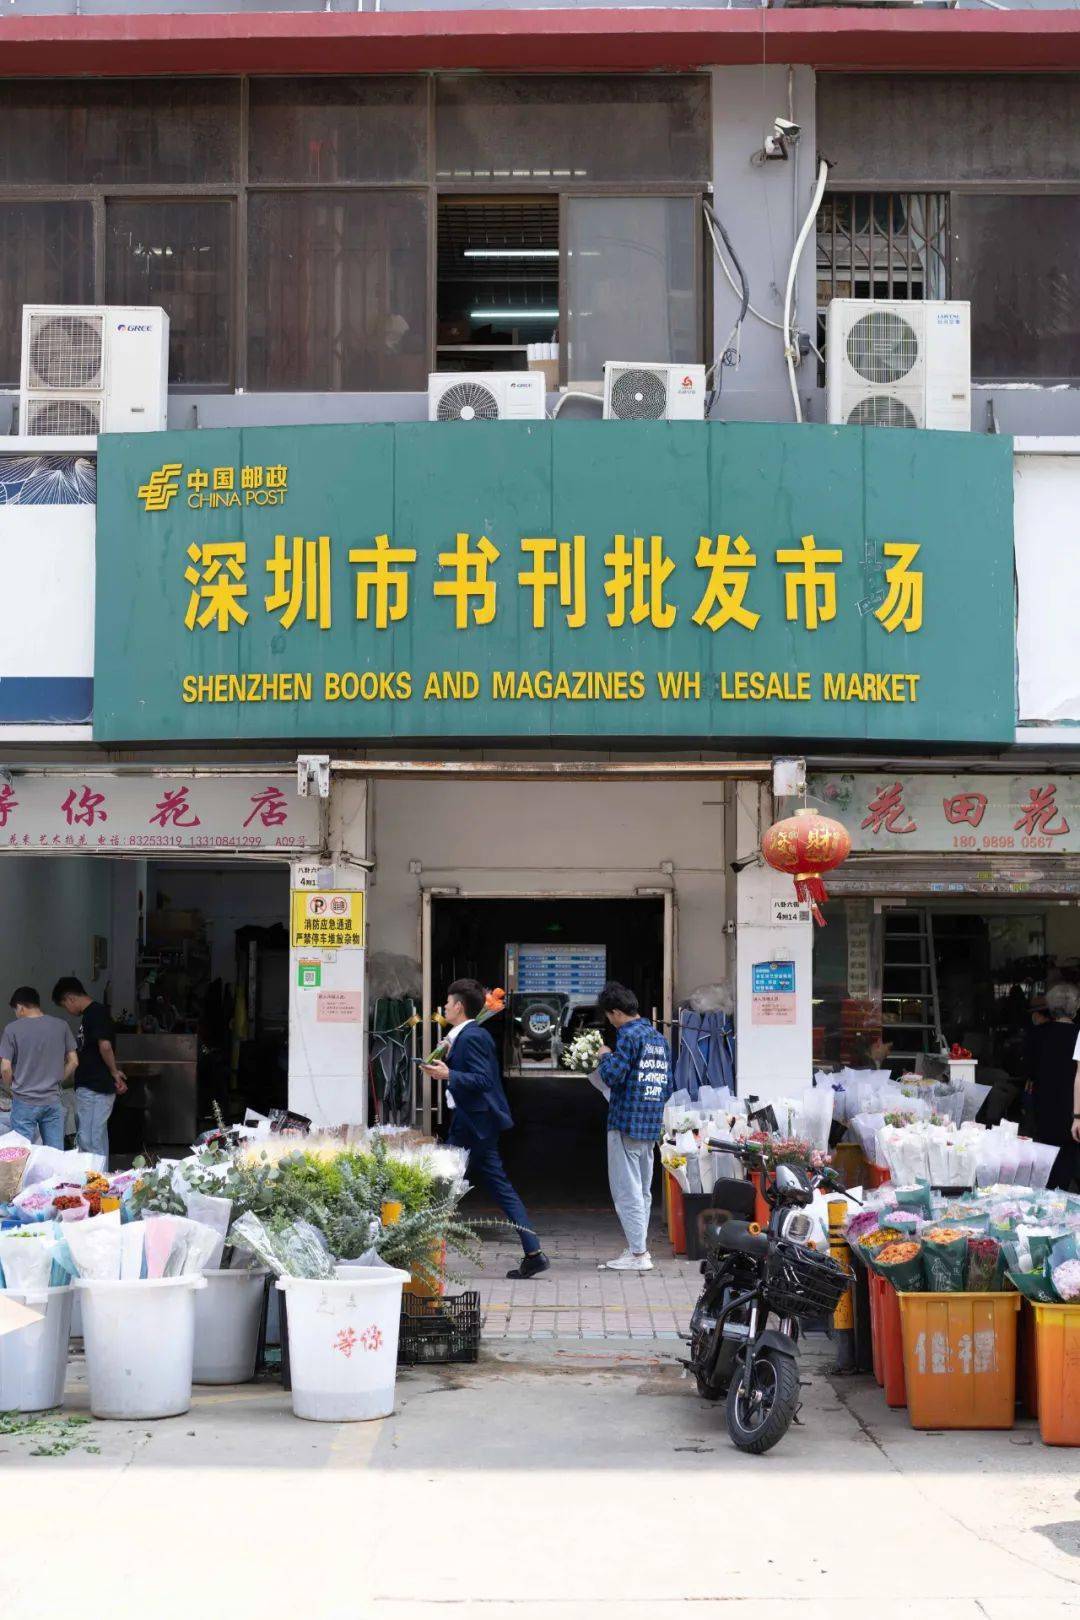 它曾是深圳最大民营图书批发市场,以前每逢开学,总会看到很多家长带着